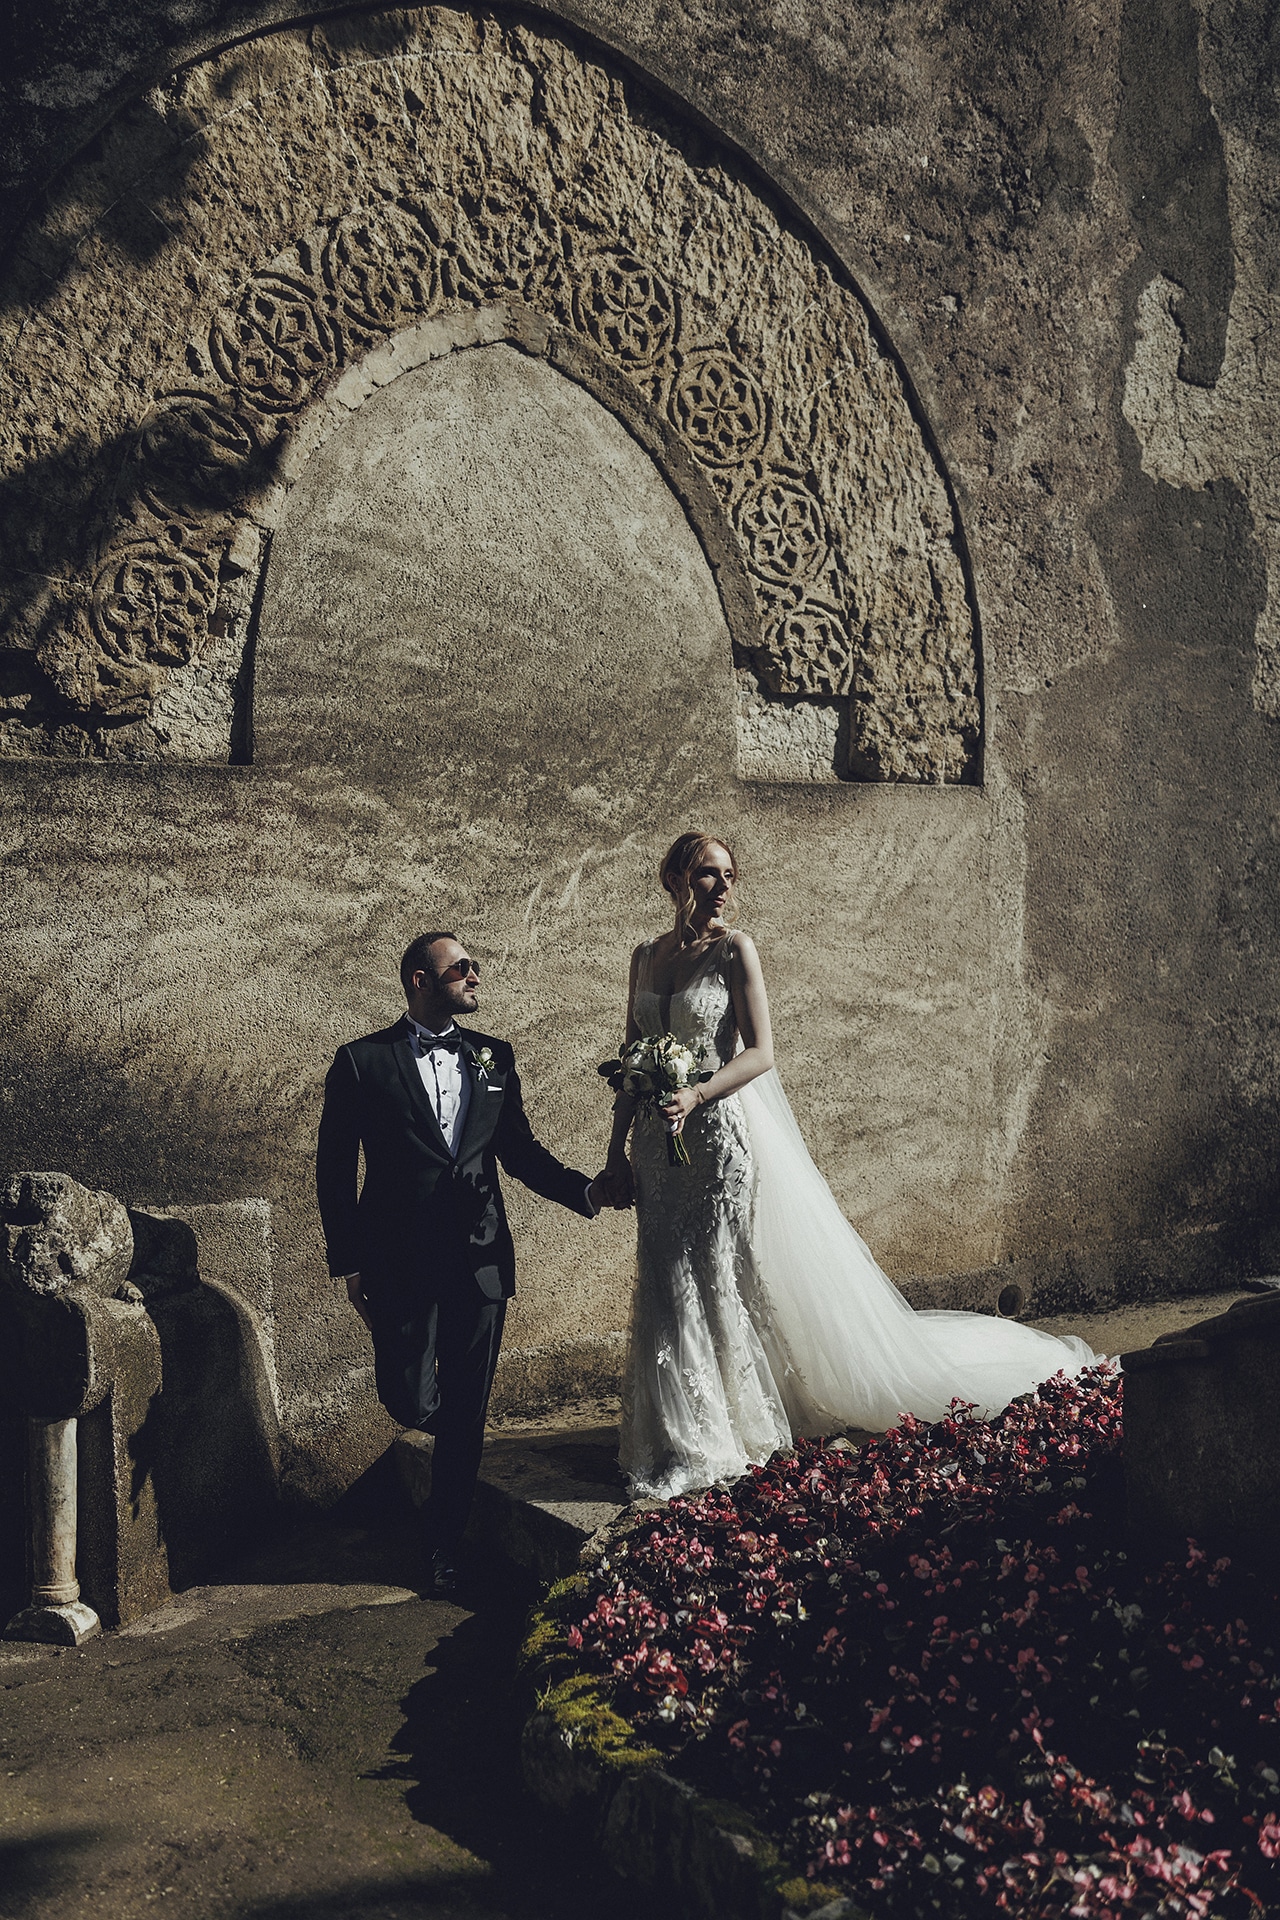 Vilma Wedding & Event Planner _ Vilma Rapšaitė _ vestuvių planavimas organizavimas koordinavimas _ Scala _ vestuvės Italijoje dviems _ Amalfio pakrantė